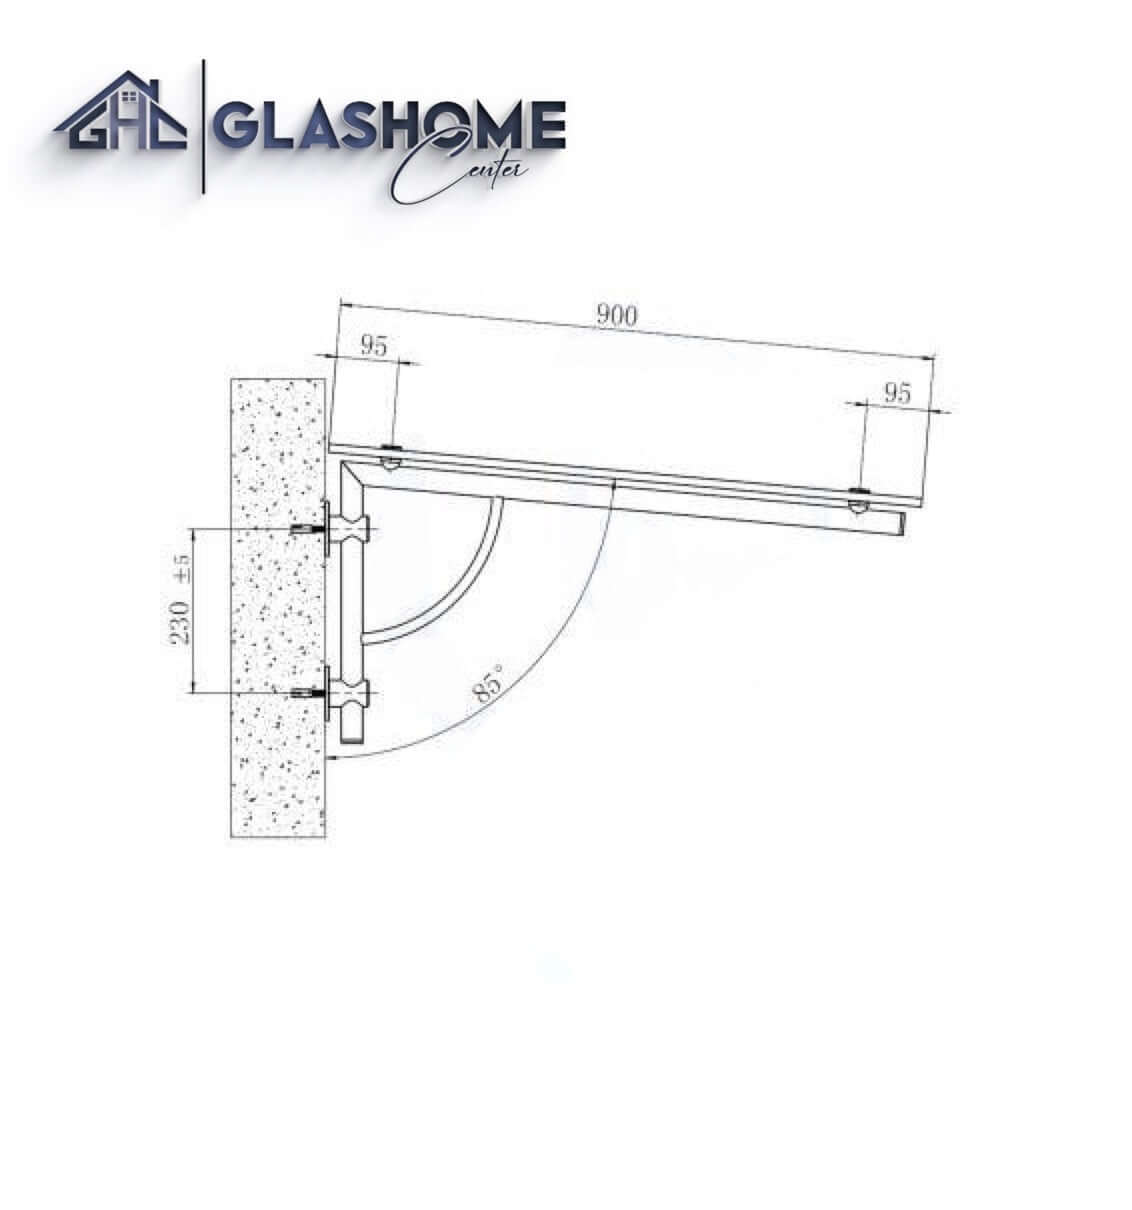 GlasHomeCenter - baldacchino in vetro - vetro trasparente - 200x90 cm - vetro di sicurezza stratificato 13,1 mm - incl.2 staffe in acciaio inox variante "Atene"